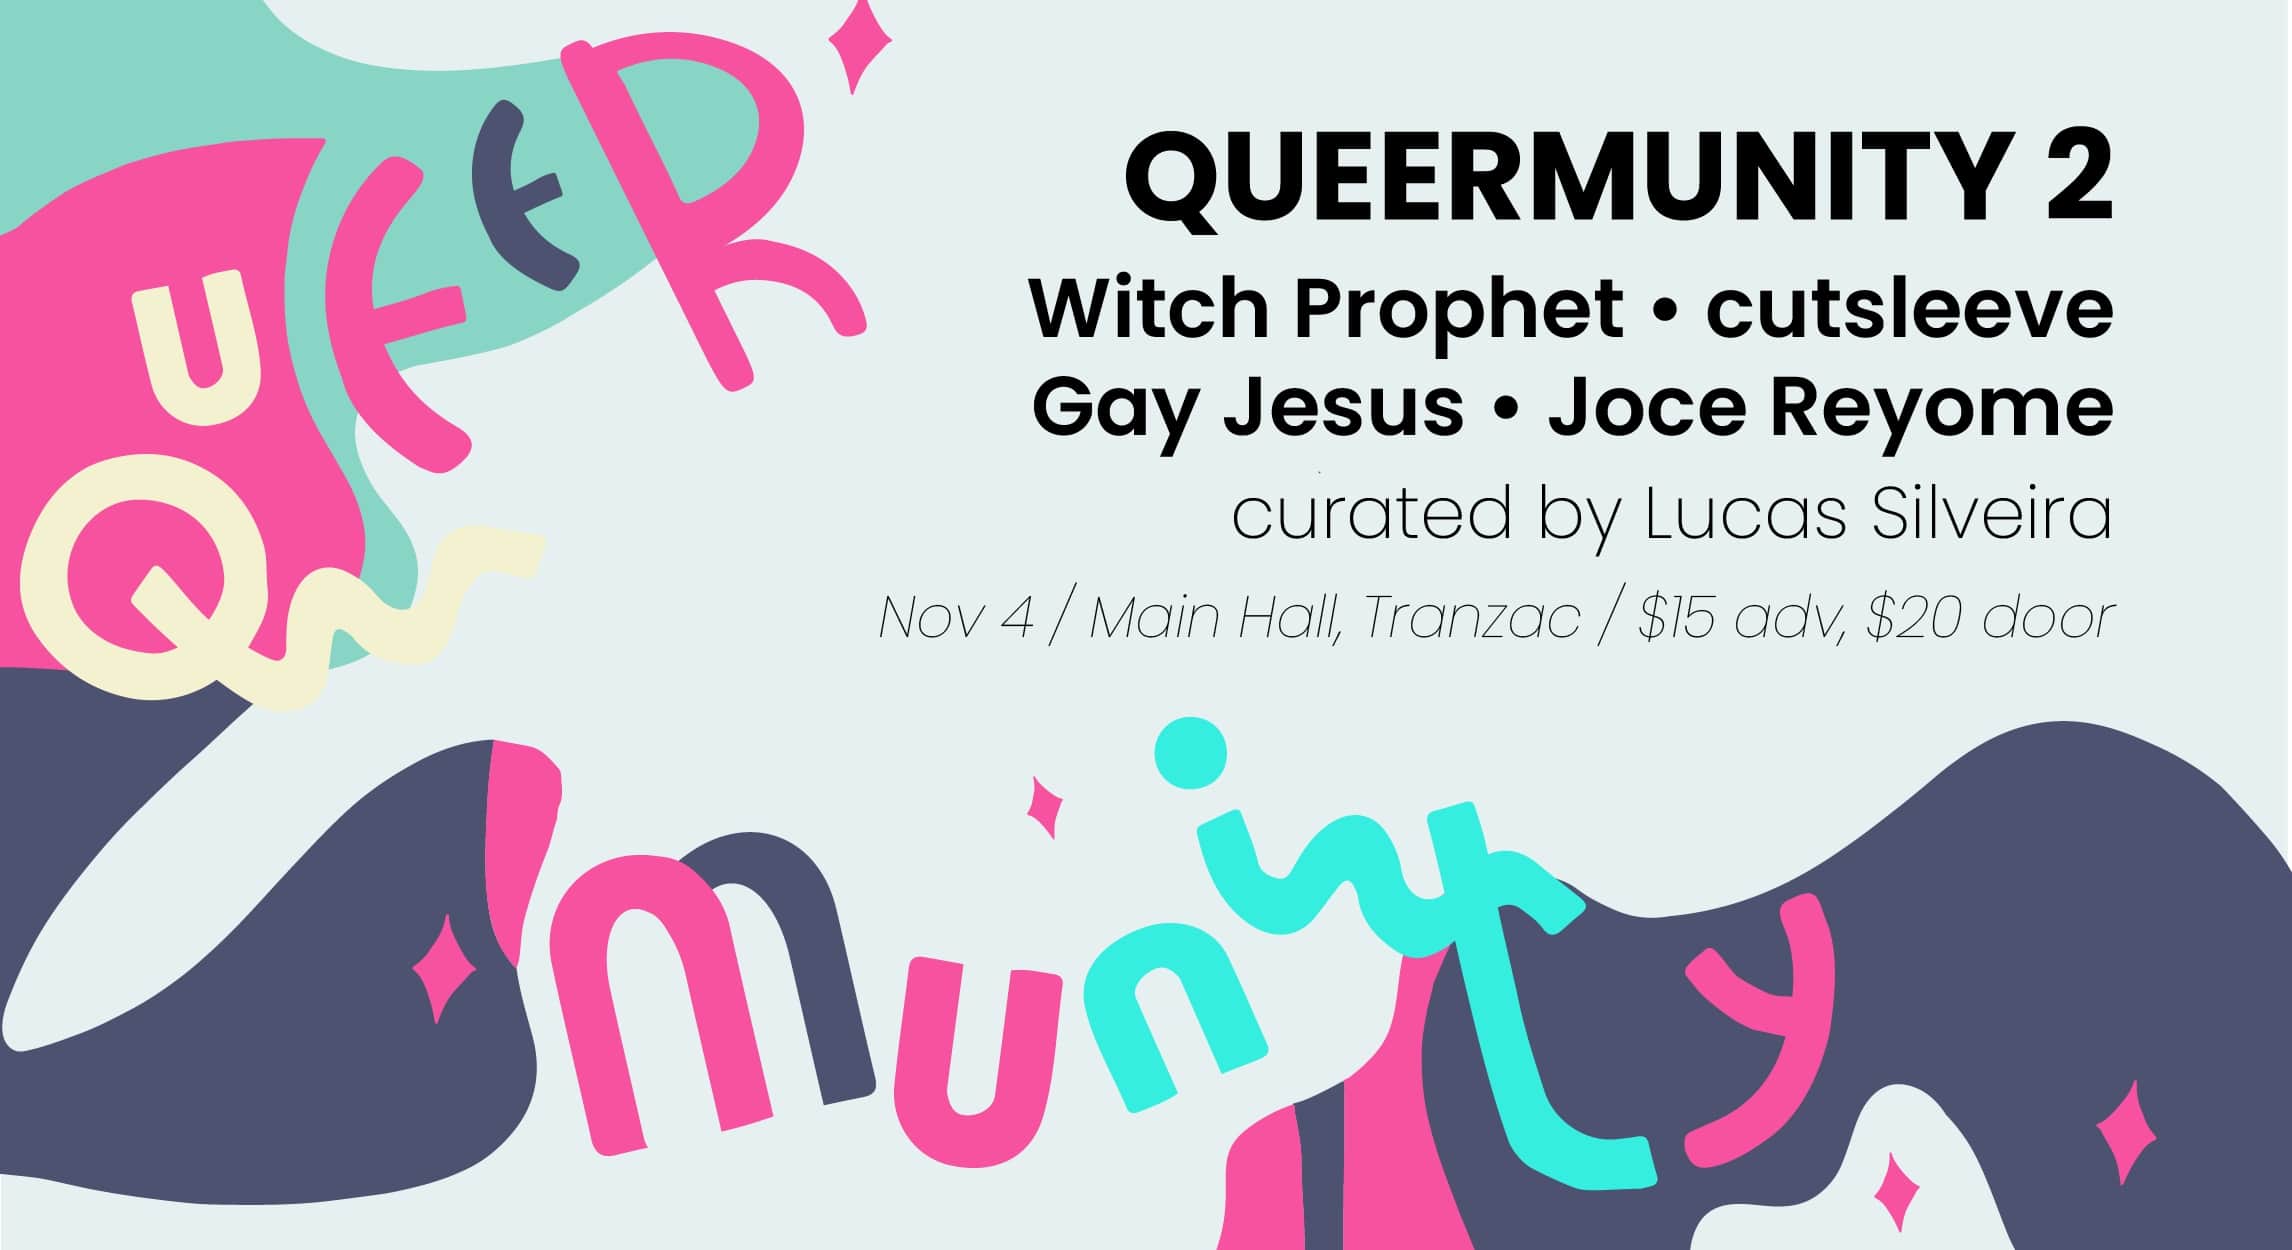 Queermunity 2 / Witch Prophet, cutsleeve, Gay Jesus, Joce Reyome